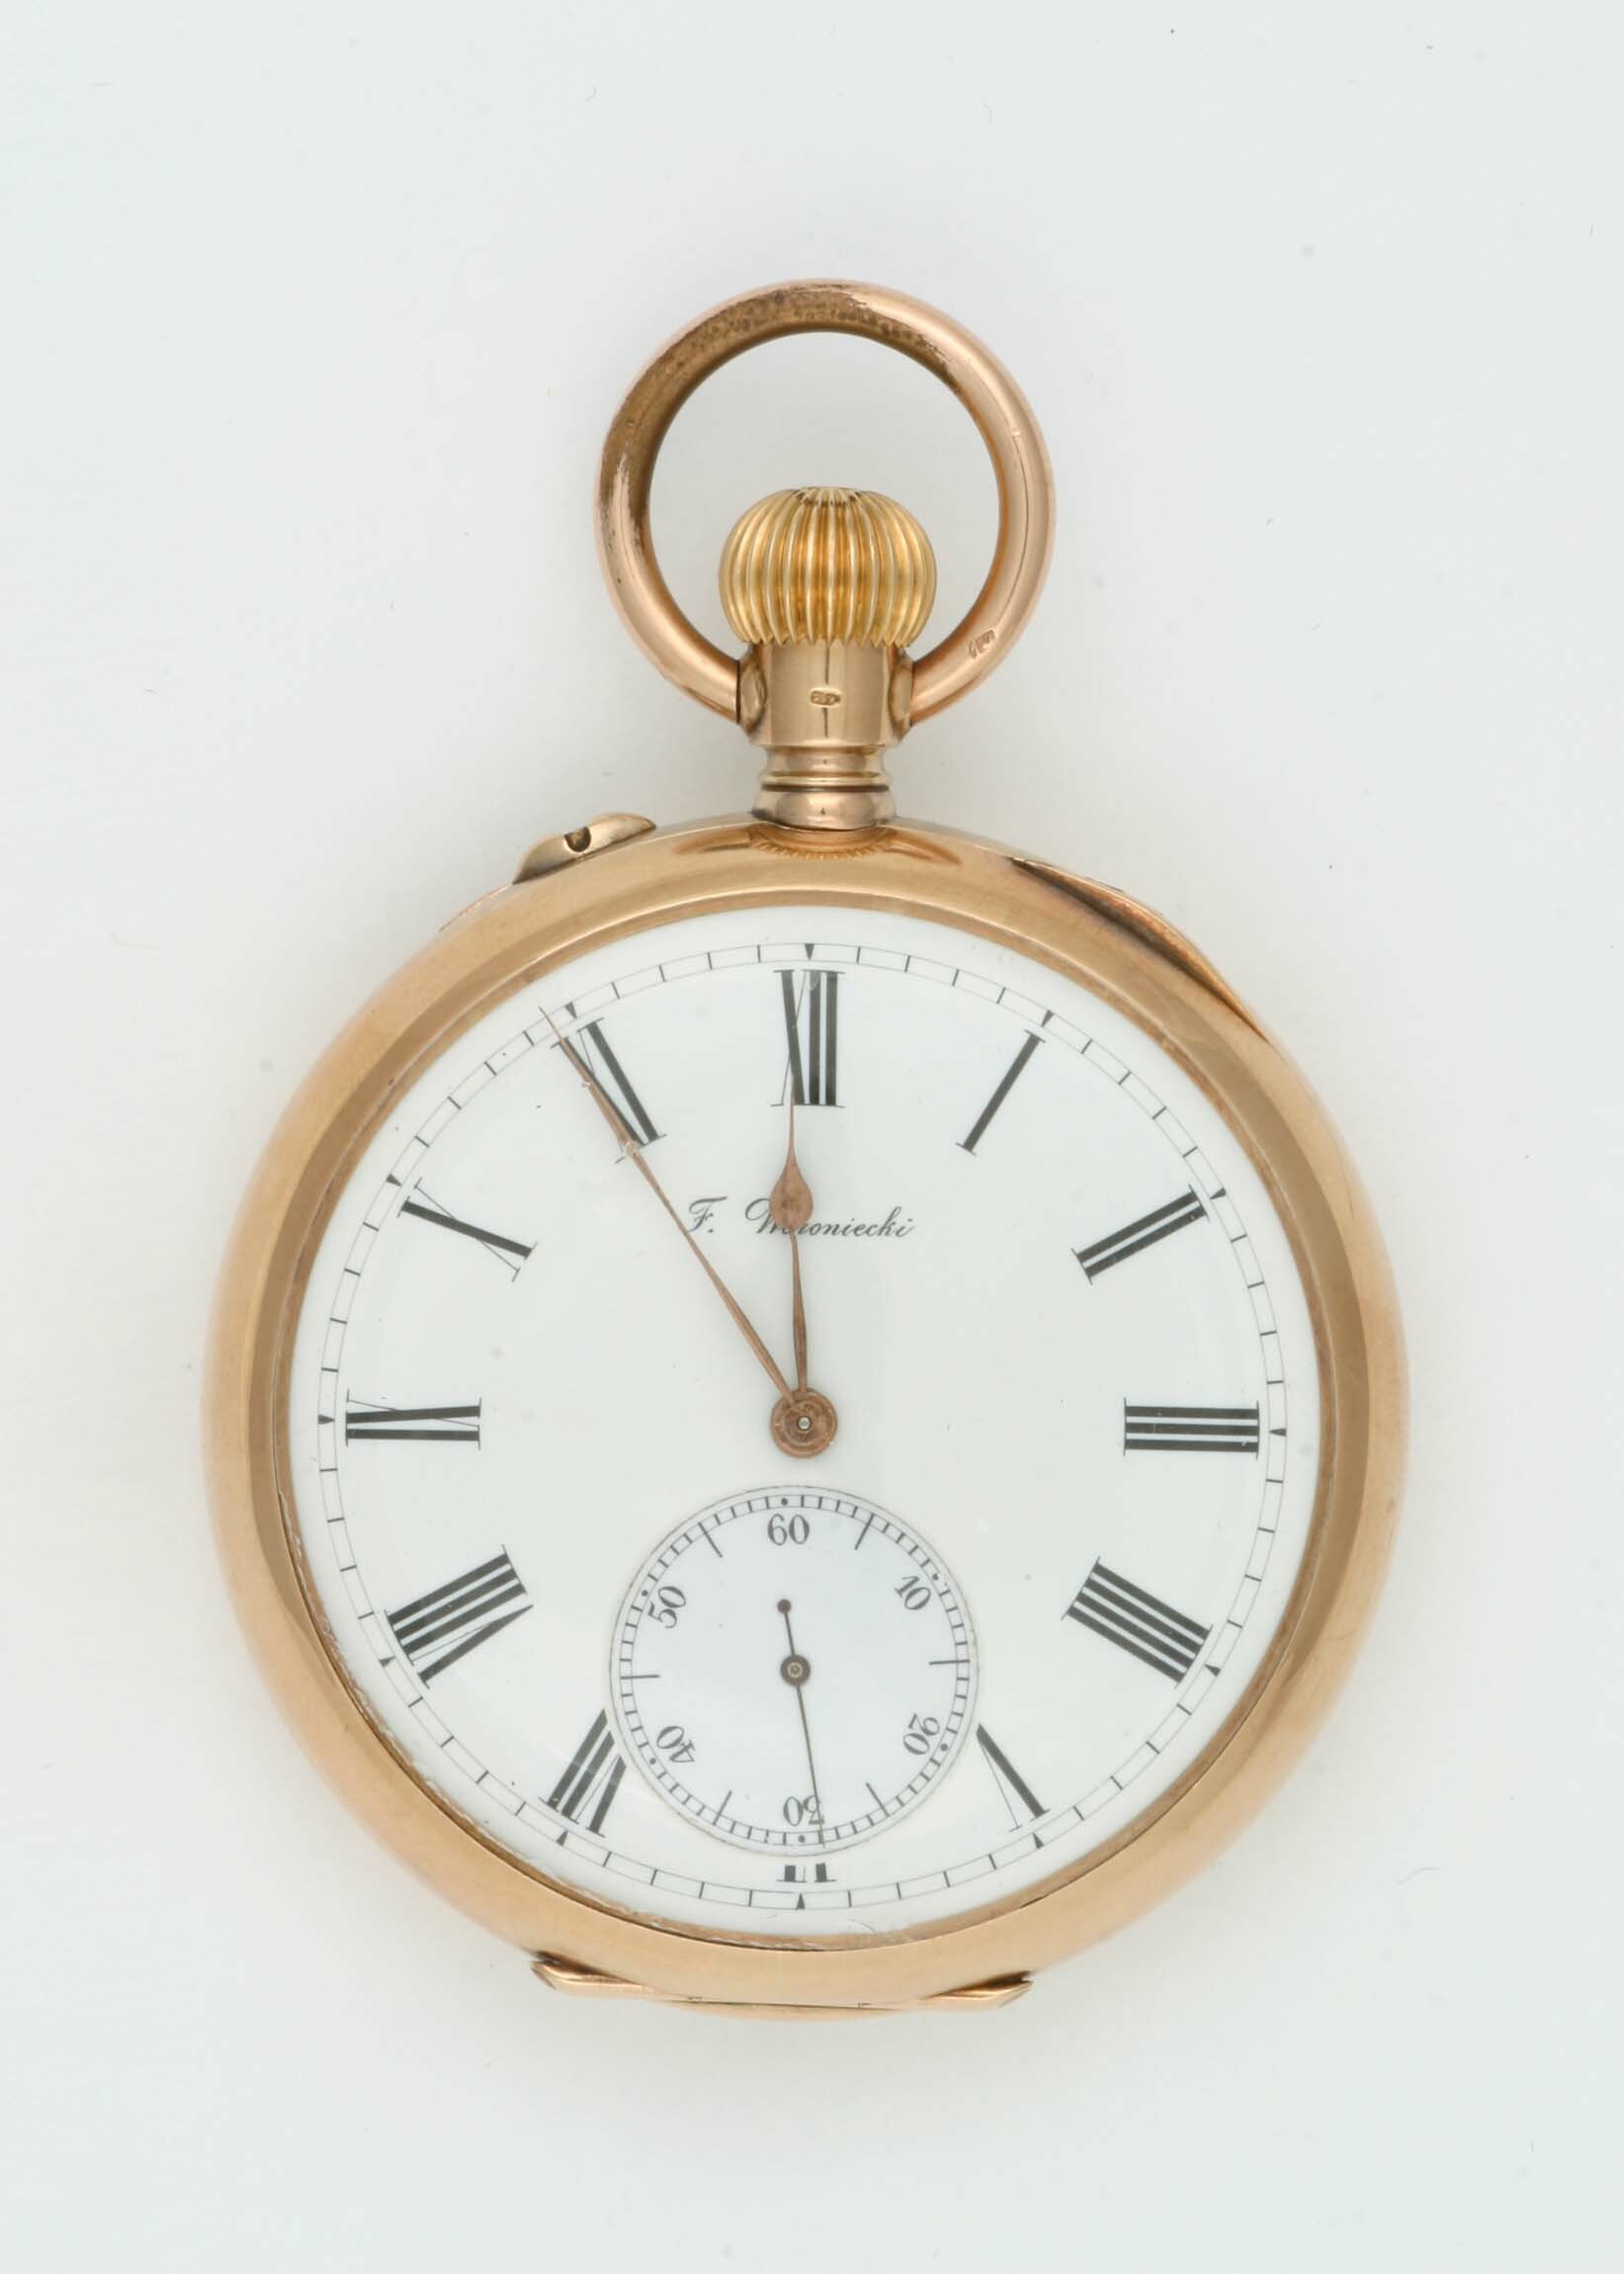 Taschenuhr F. Woroniecki (Ch. F. Tissot und Fils), Le Locle, Warschau, um 1880 (Deutsches Uhrenmuseum CC BY-SA)